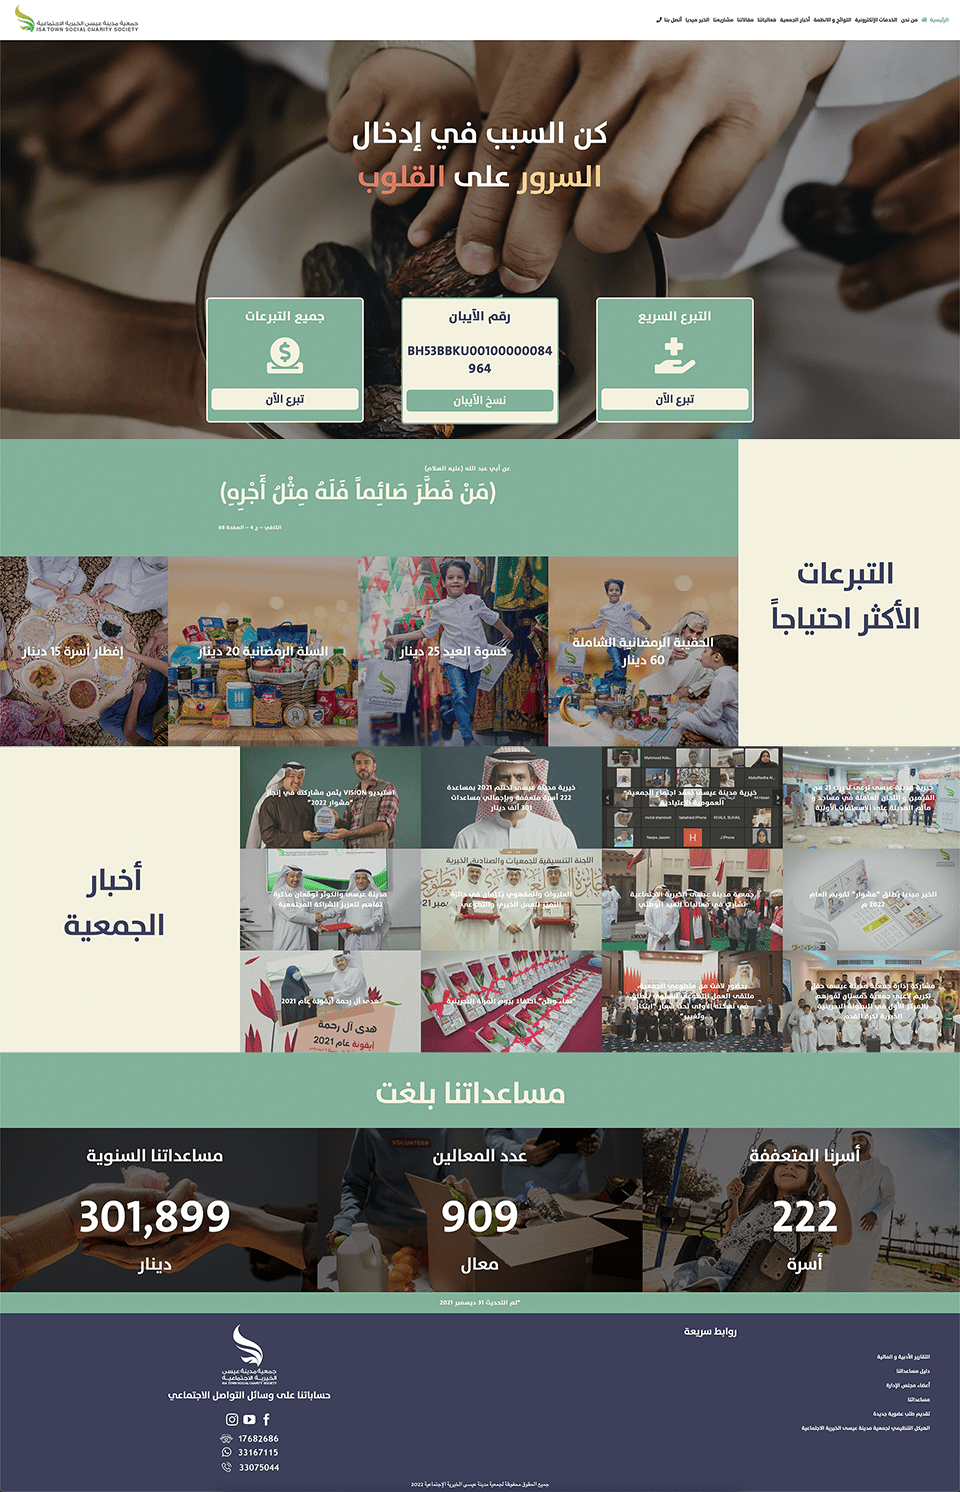 جمعية مدينة عيسى الخيرية الاجتماعية تطلق موقعها الإلكتروني بحلة رمضانية جديدة